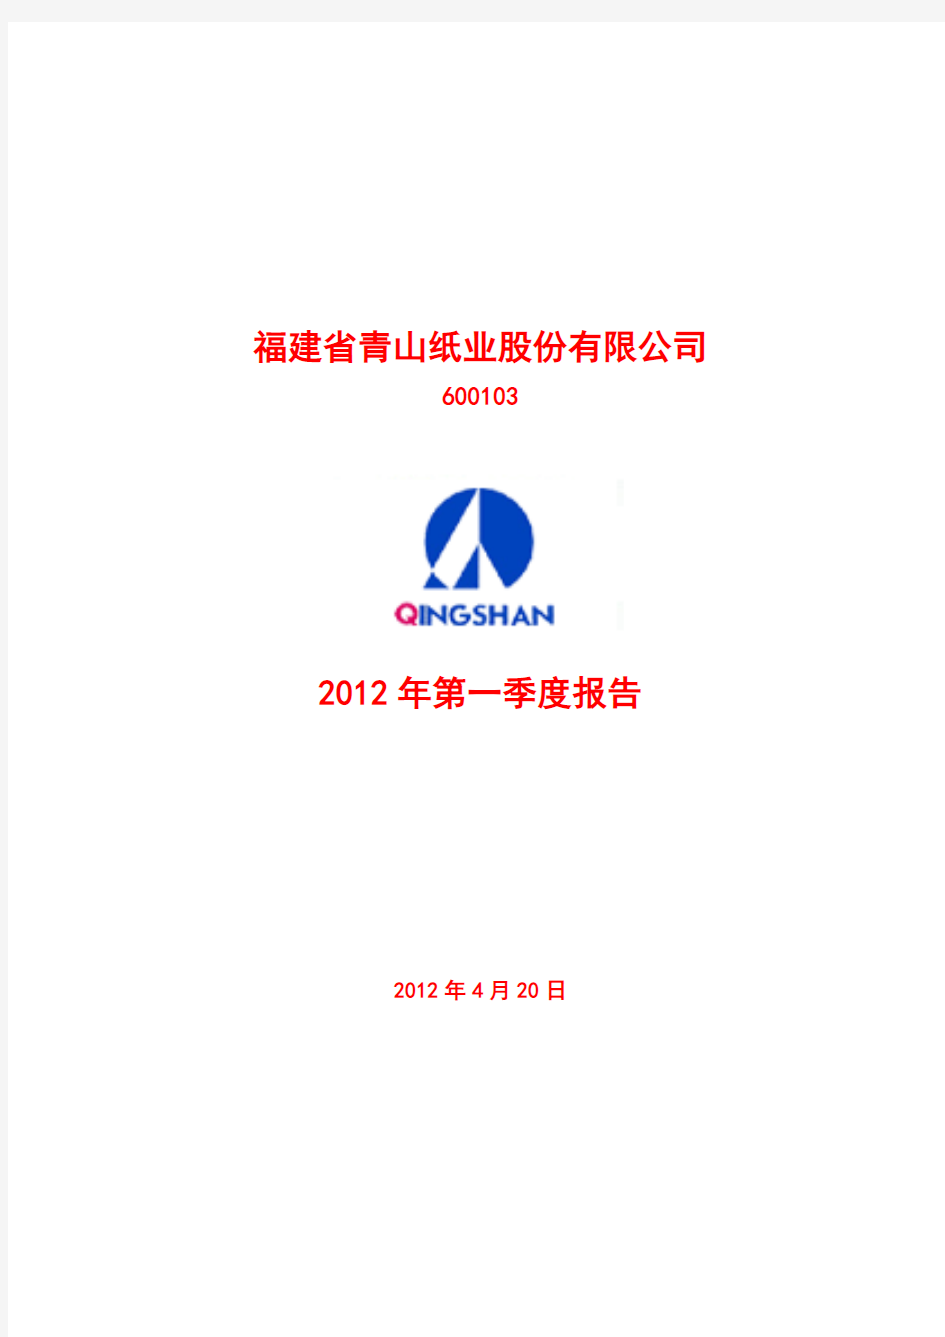 青山纸业(600103)：2012年第一季度季报